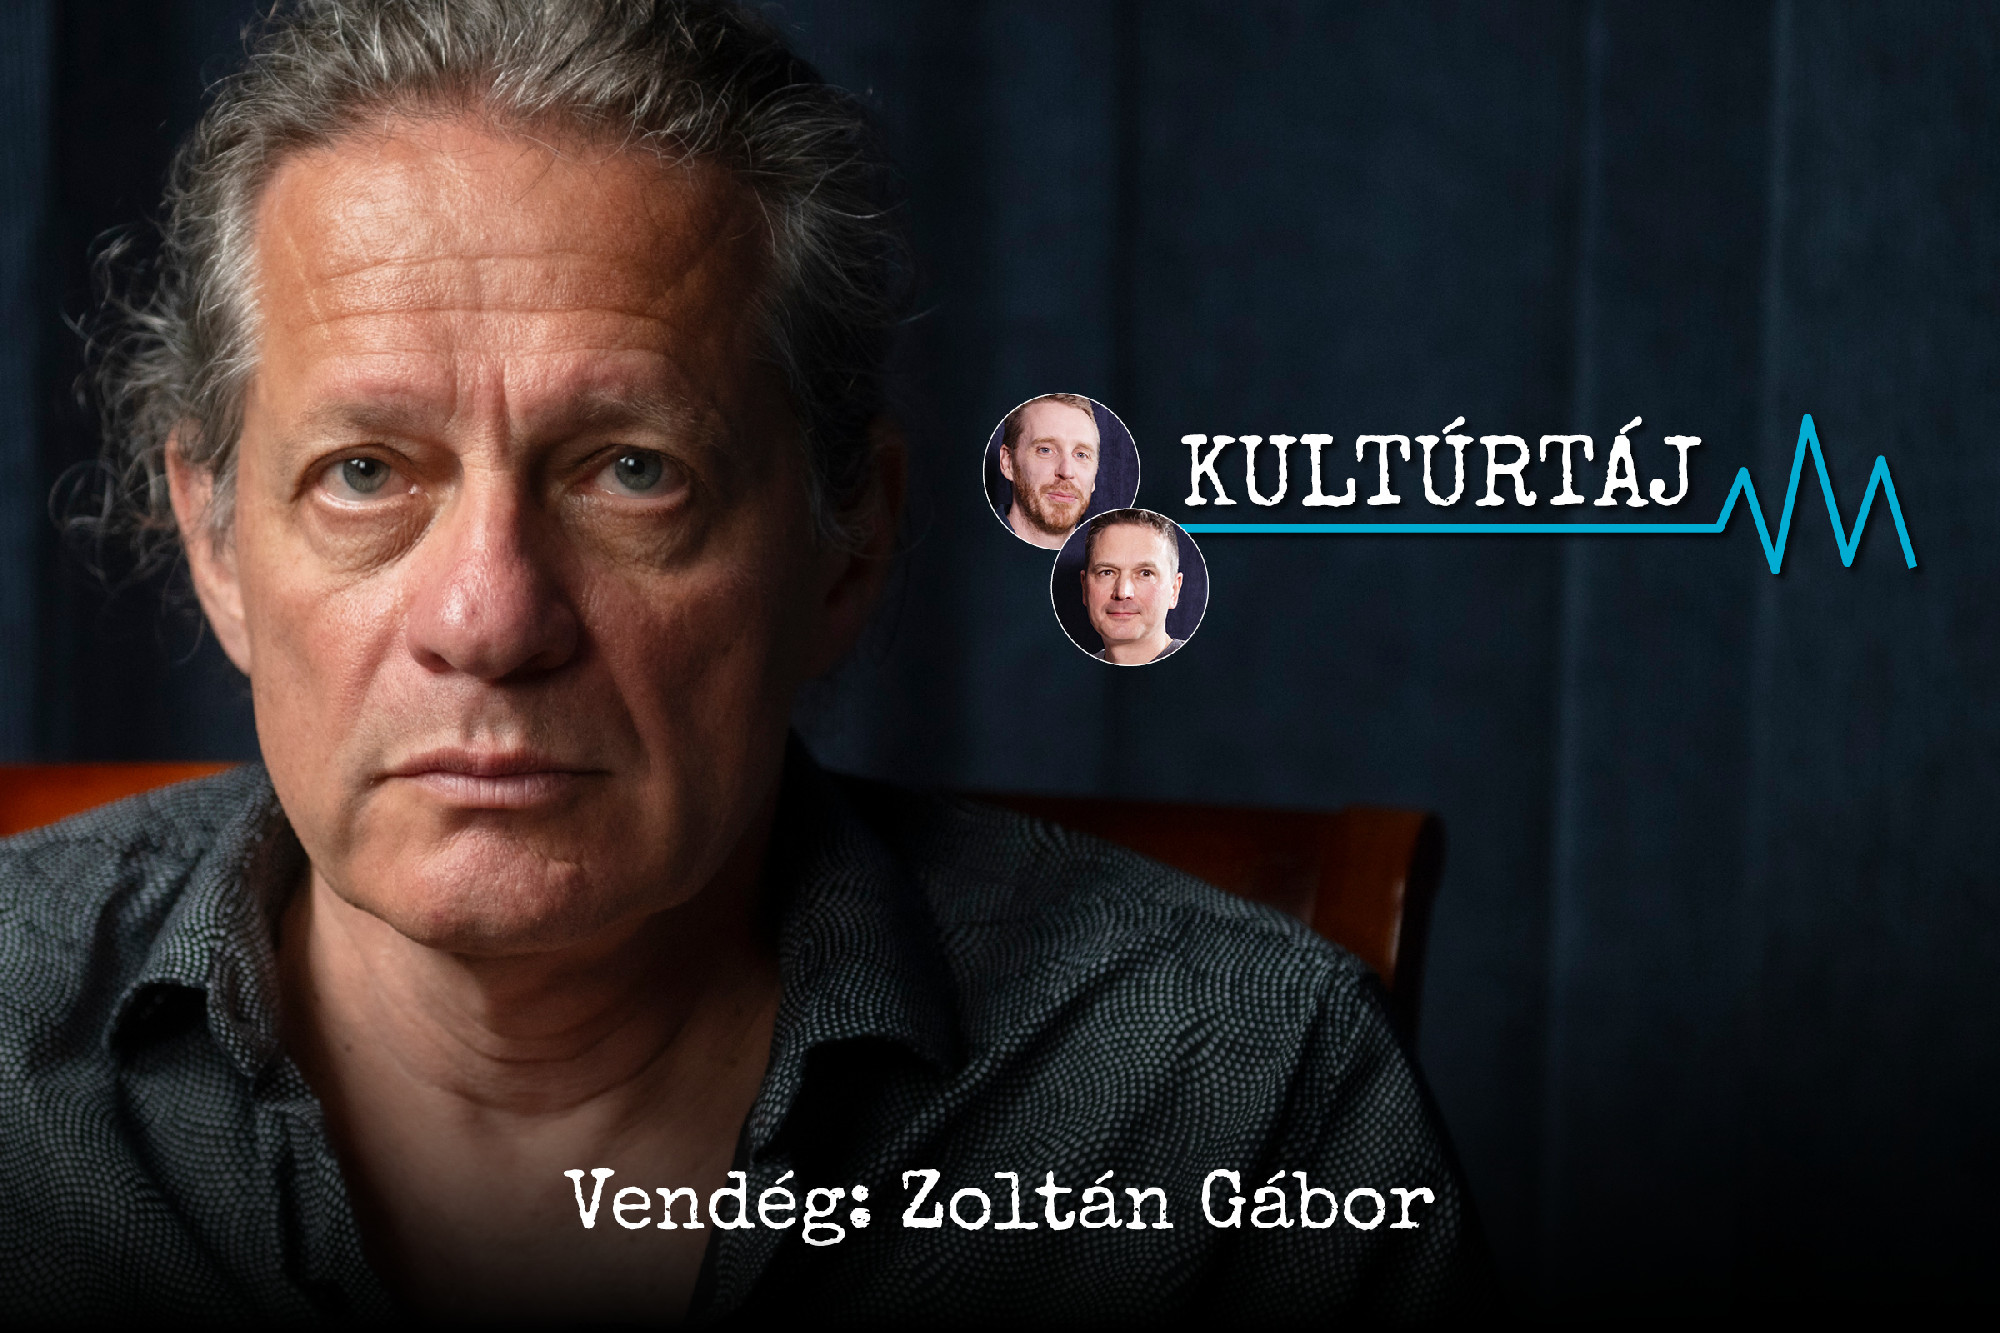 Orbán Viktornak semmi sem drága, hogy megtartsa a hatalmát – Zoltán Gábor a Kultúrtájban